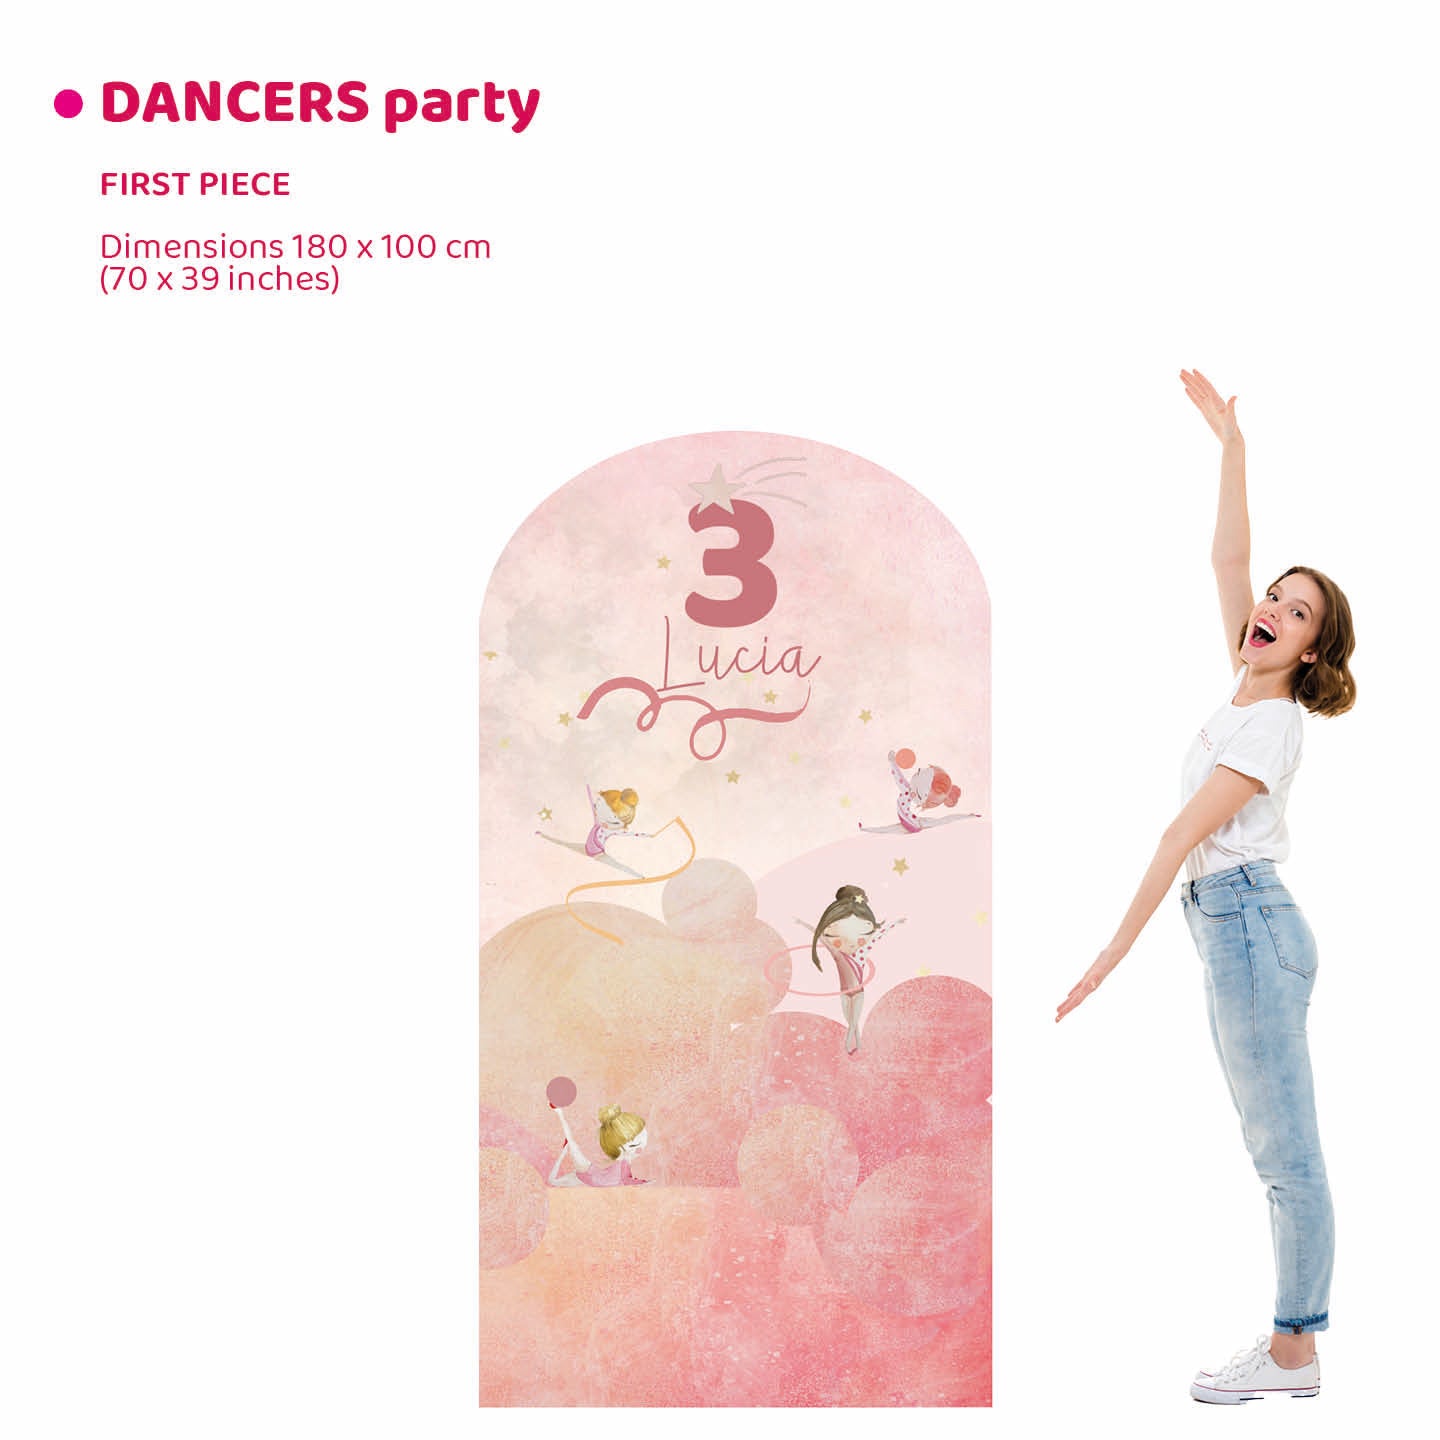 DANCERS PARTY da terra | Decorazione festa di compleanno | Party planner - Peekaboo